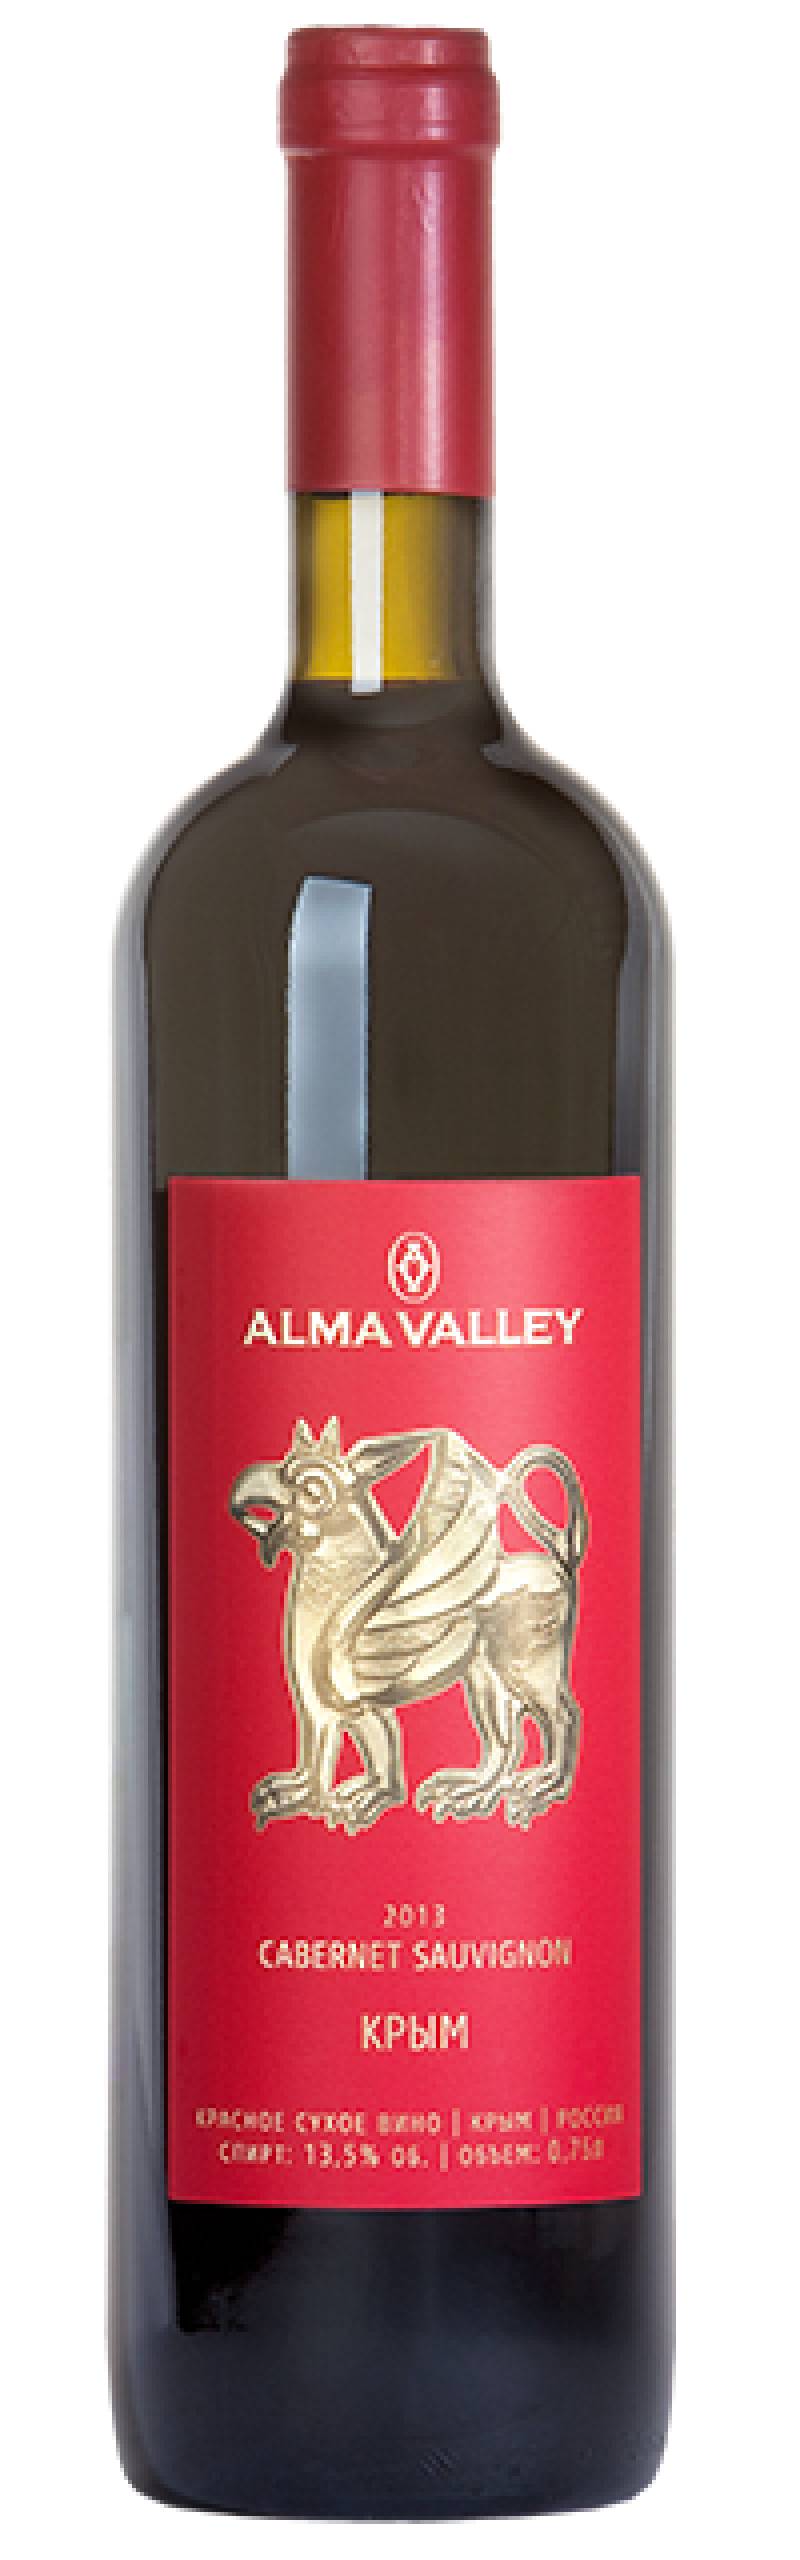 Вино Альминская Долина. Каберне Совиньон 2015  0,75 л.  Alma Valley Cabernet Sauvignon 2015 0,75 L.